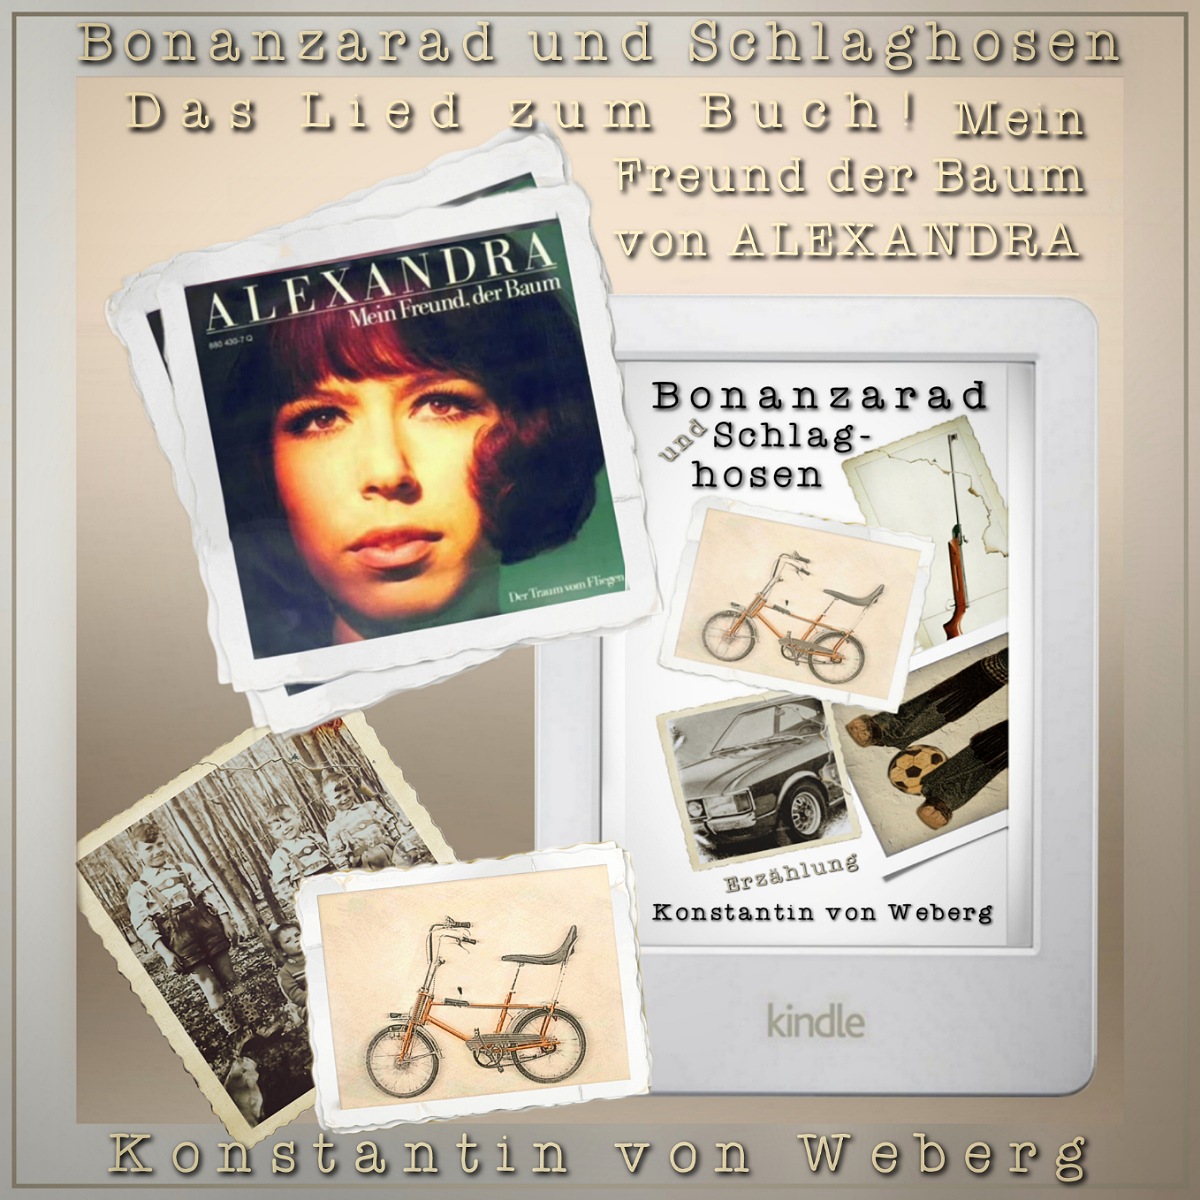 Das Lied von Alexandra ‘Mein Freund der Baum’ und der Roman ‘Bonanzarad und Schlaghosen’